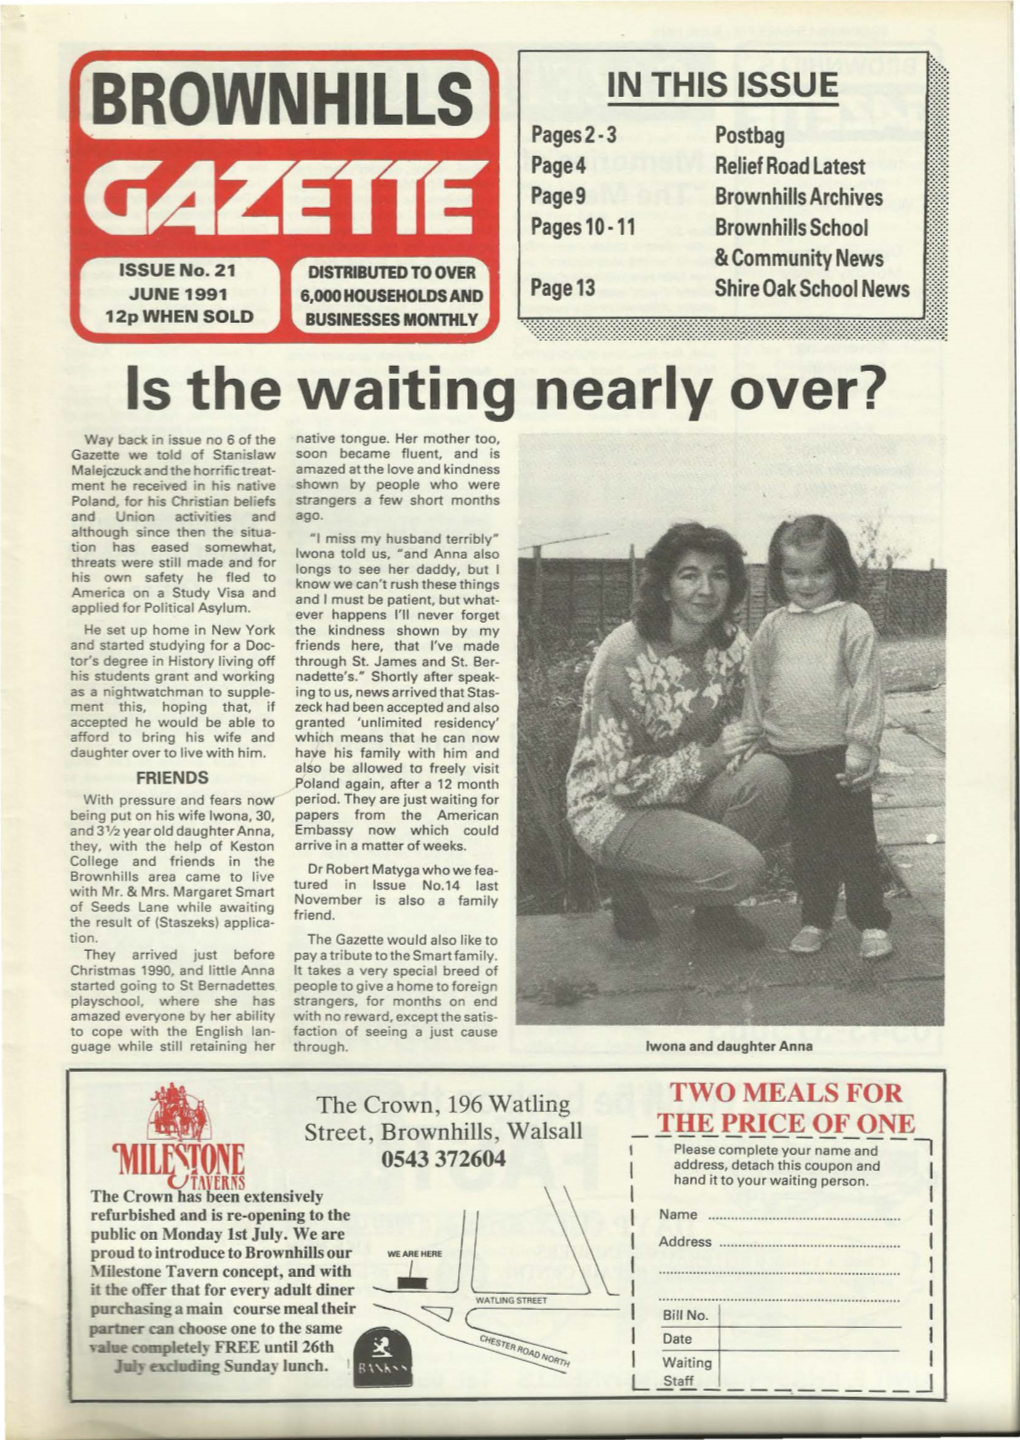 Brownhills Gazette Issue 21 June 1991